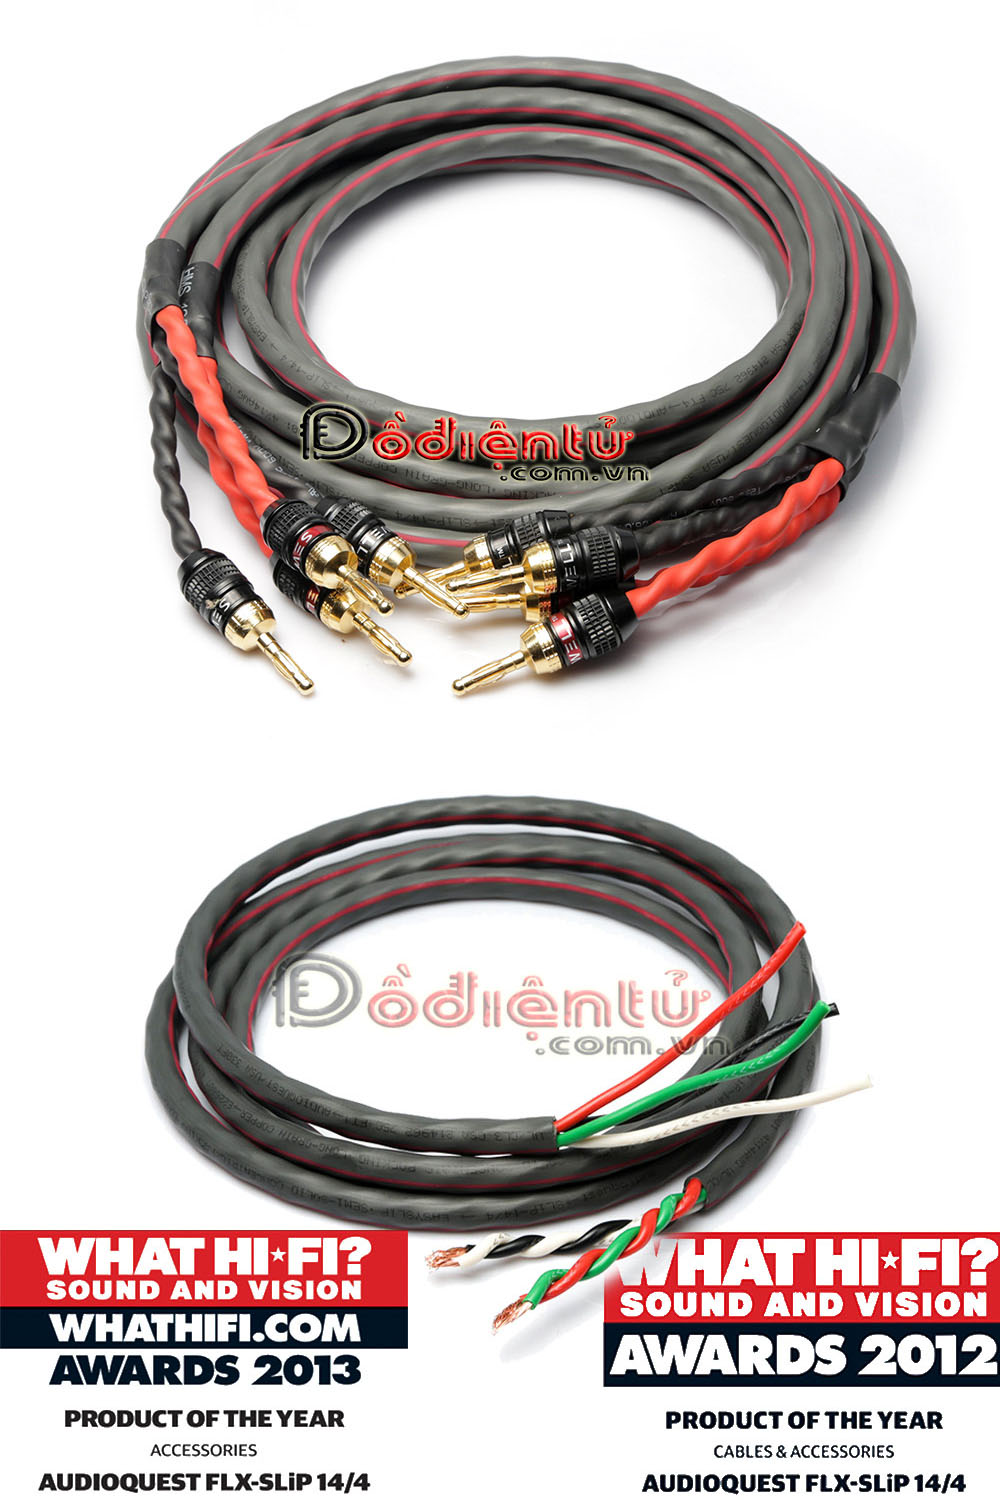 dodientu.com.vn chuyên dây cáp HDMI giá rẻ, Coaxial, Optical, DVI  .Giá tốt nhất - 32